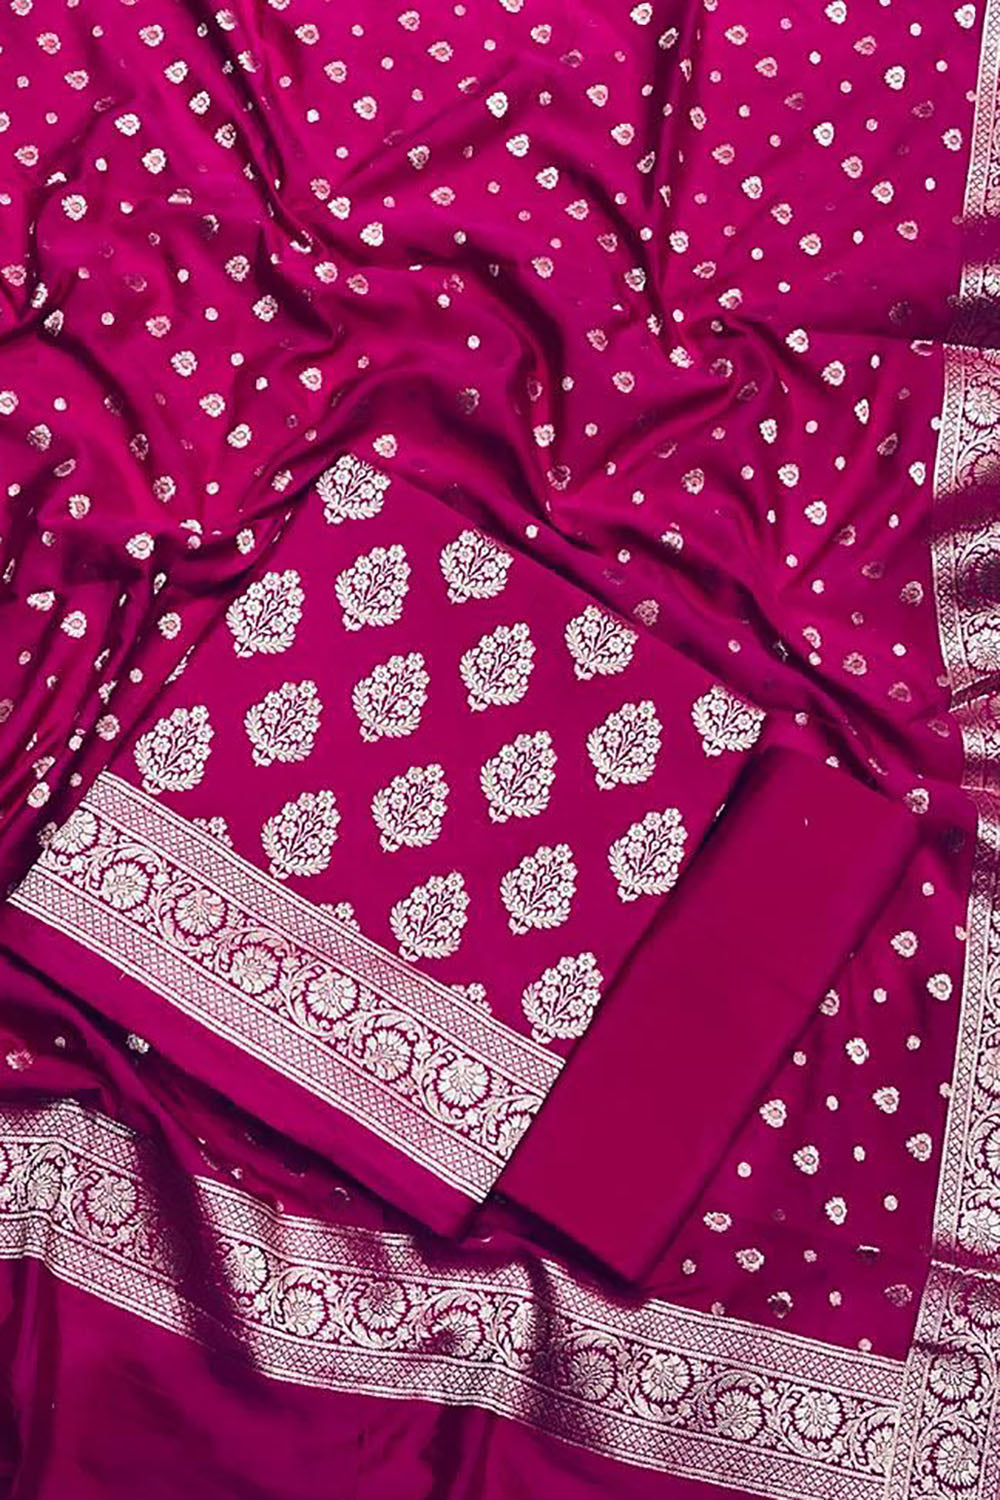 Stunning Pink Banarasi Dupion Silk Suit Set - Unstitched 3-Piece - Luxurion World